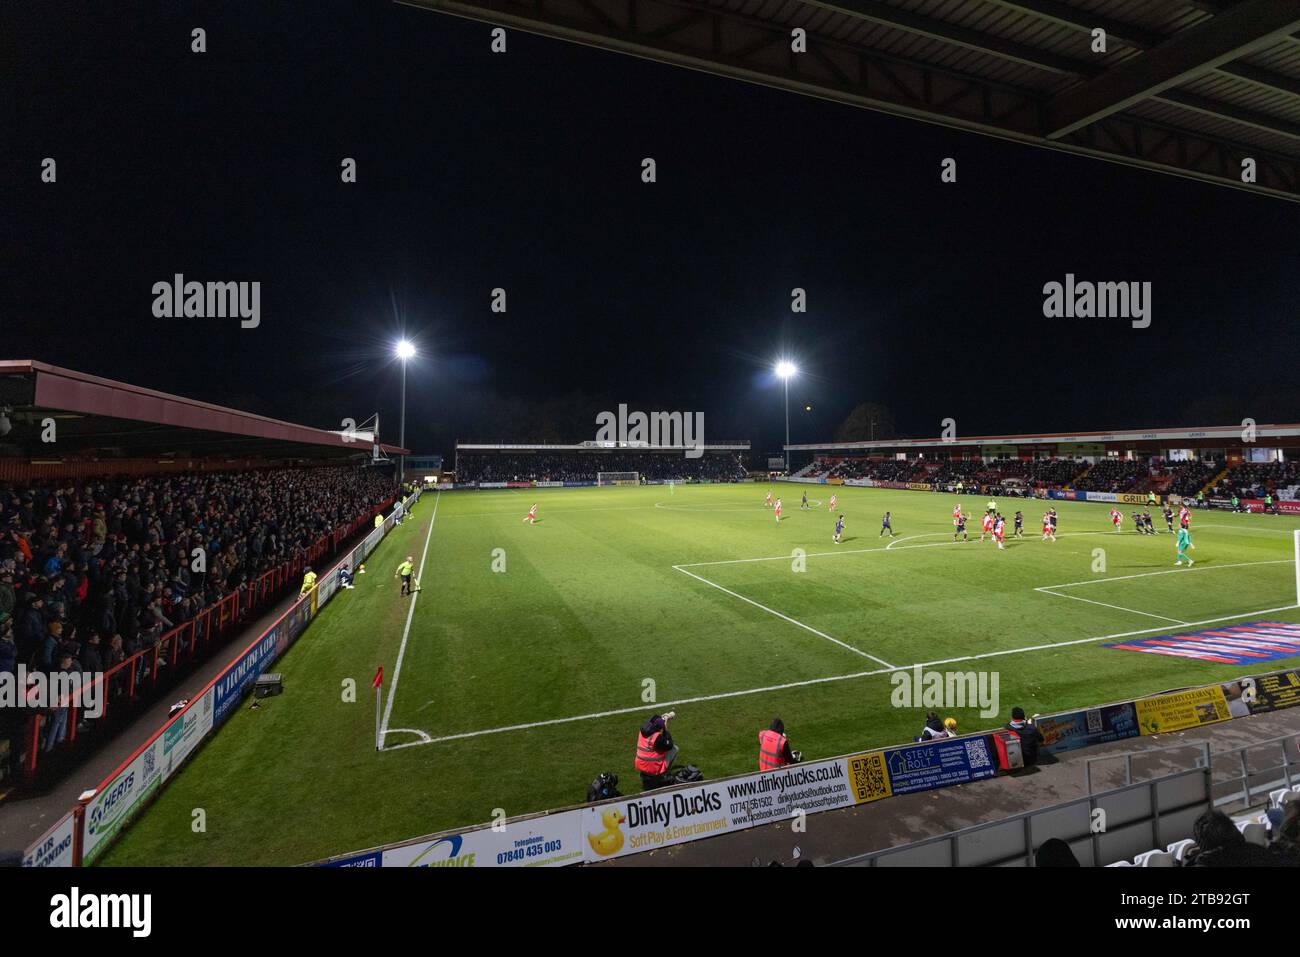 Vista dalla North Stand al Lamex Stadium, sede dello Stevenage Football Club sotto i riflettori durante la partita notturna. Foto Stock